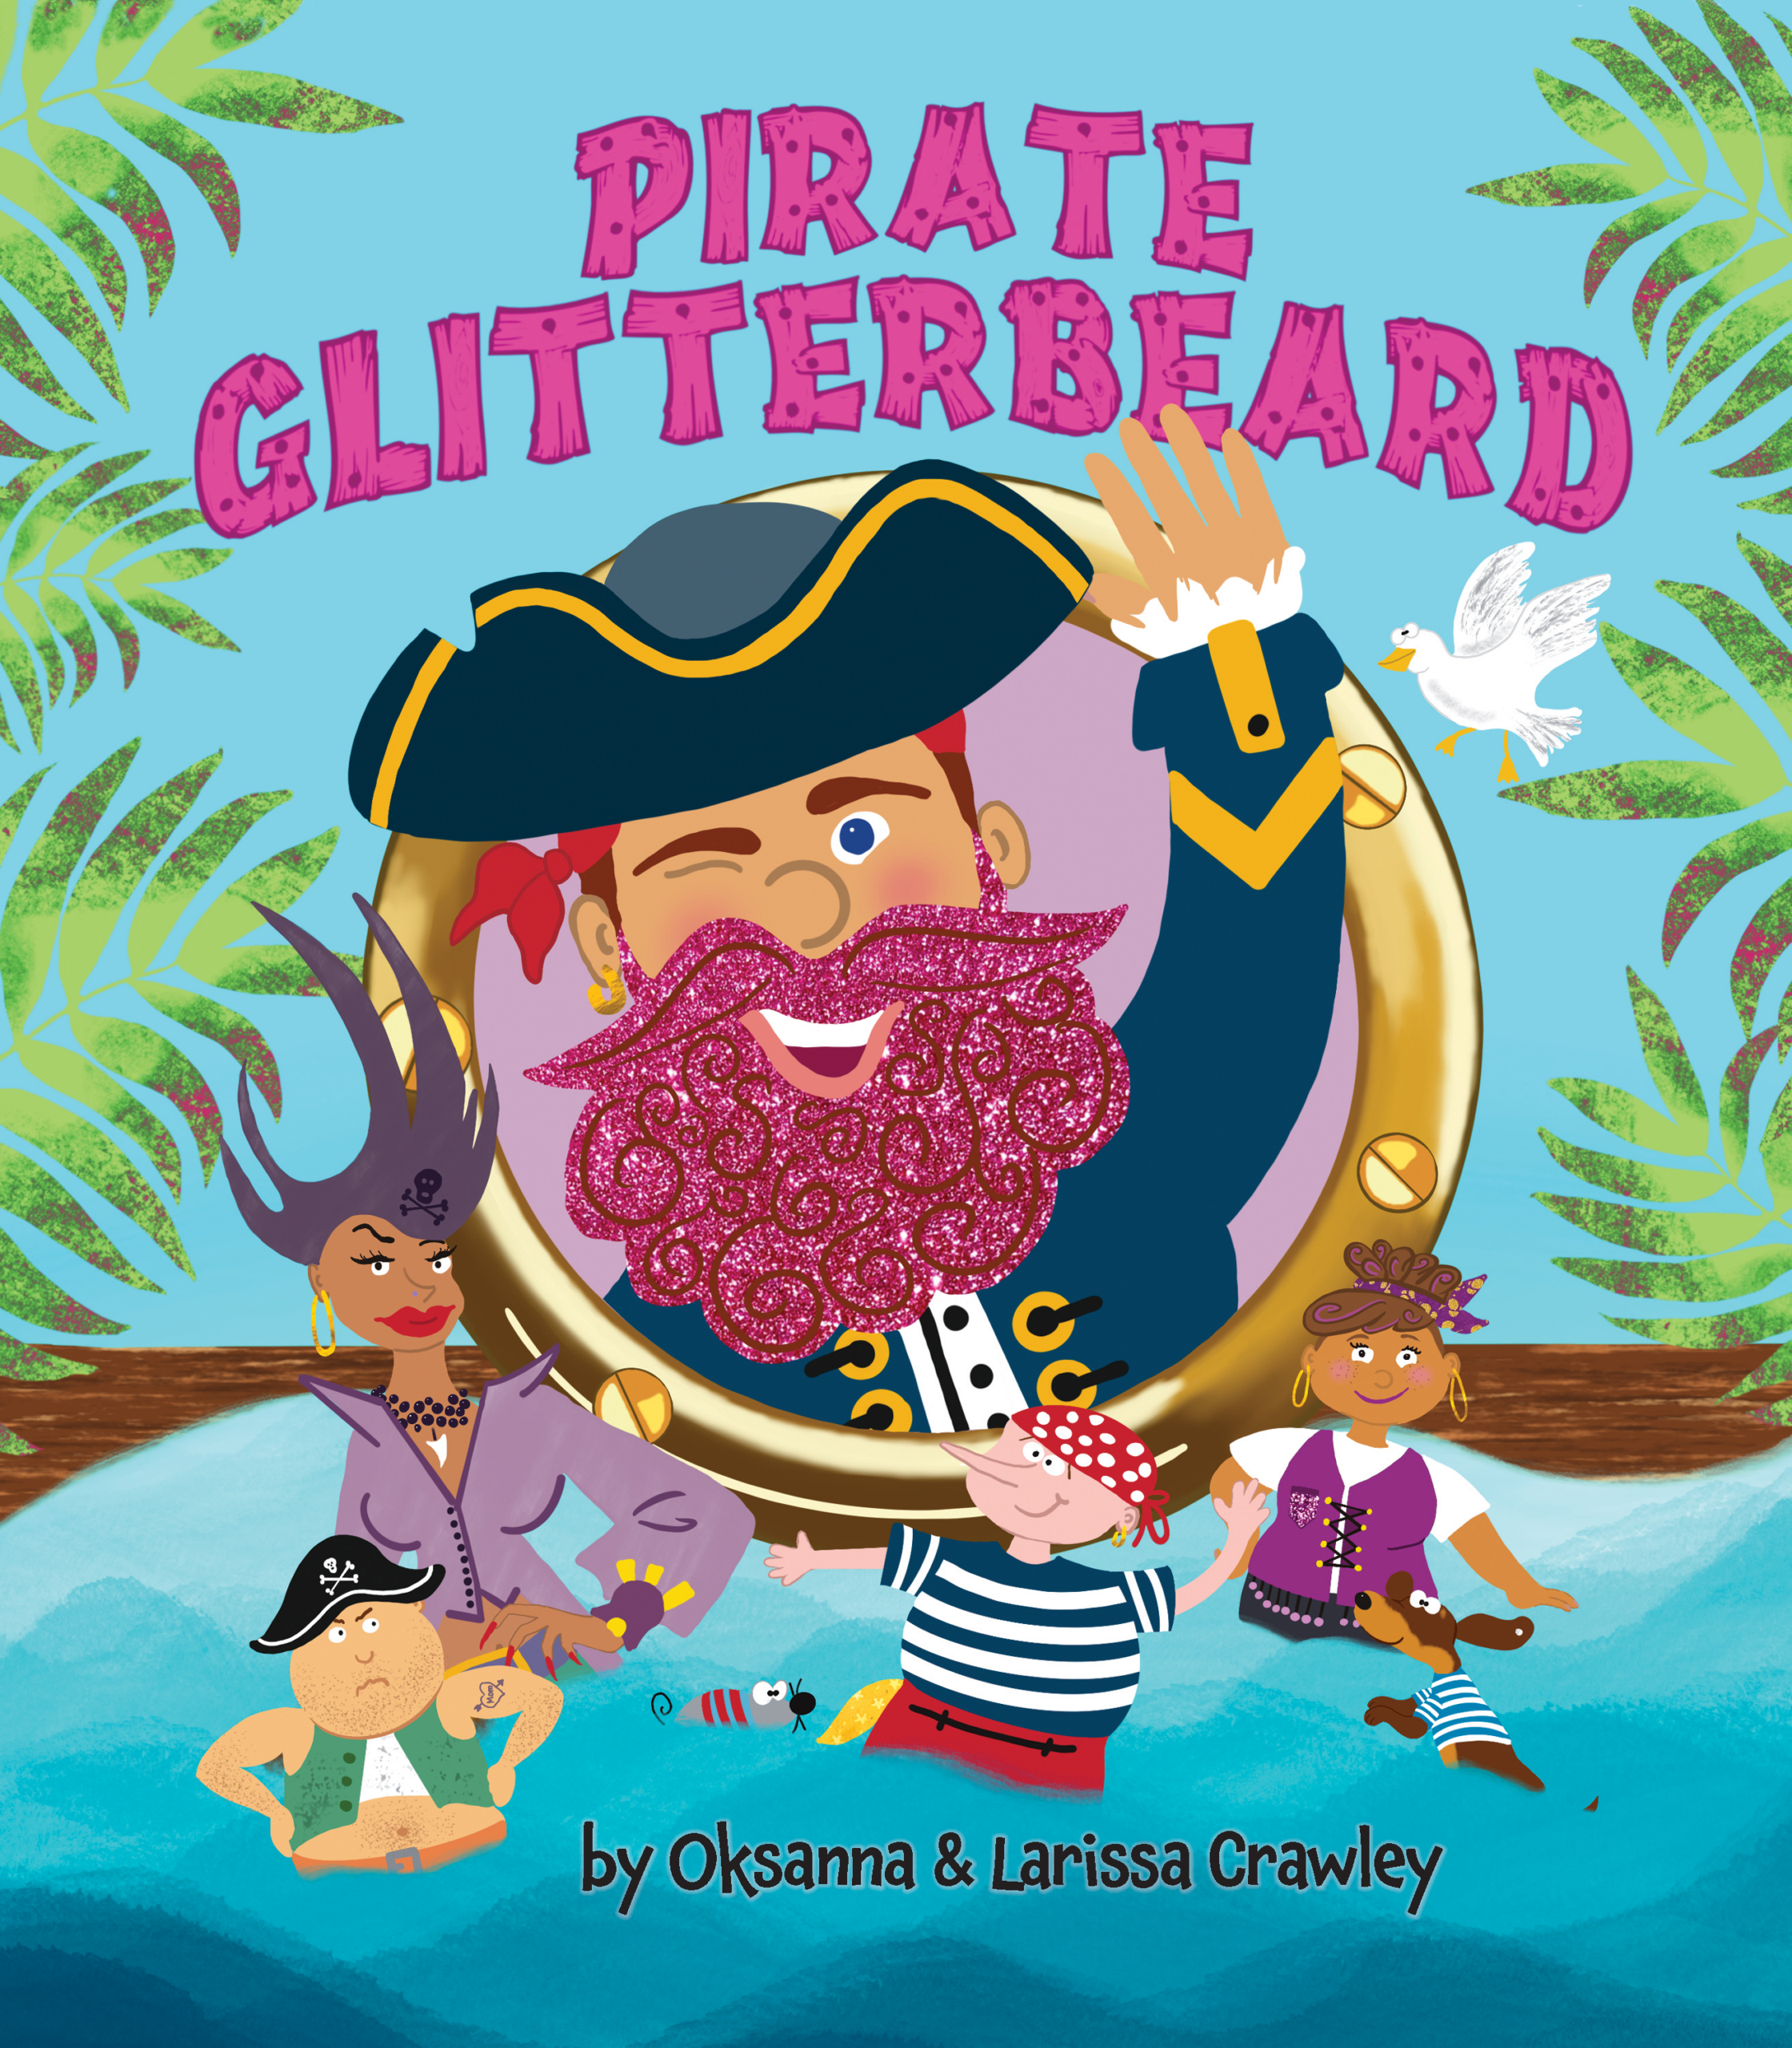 Pirate Glitterbeard